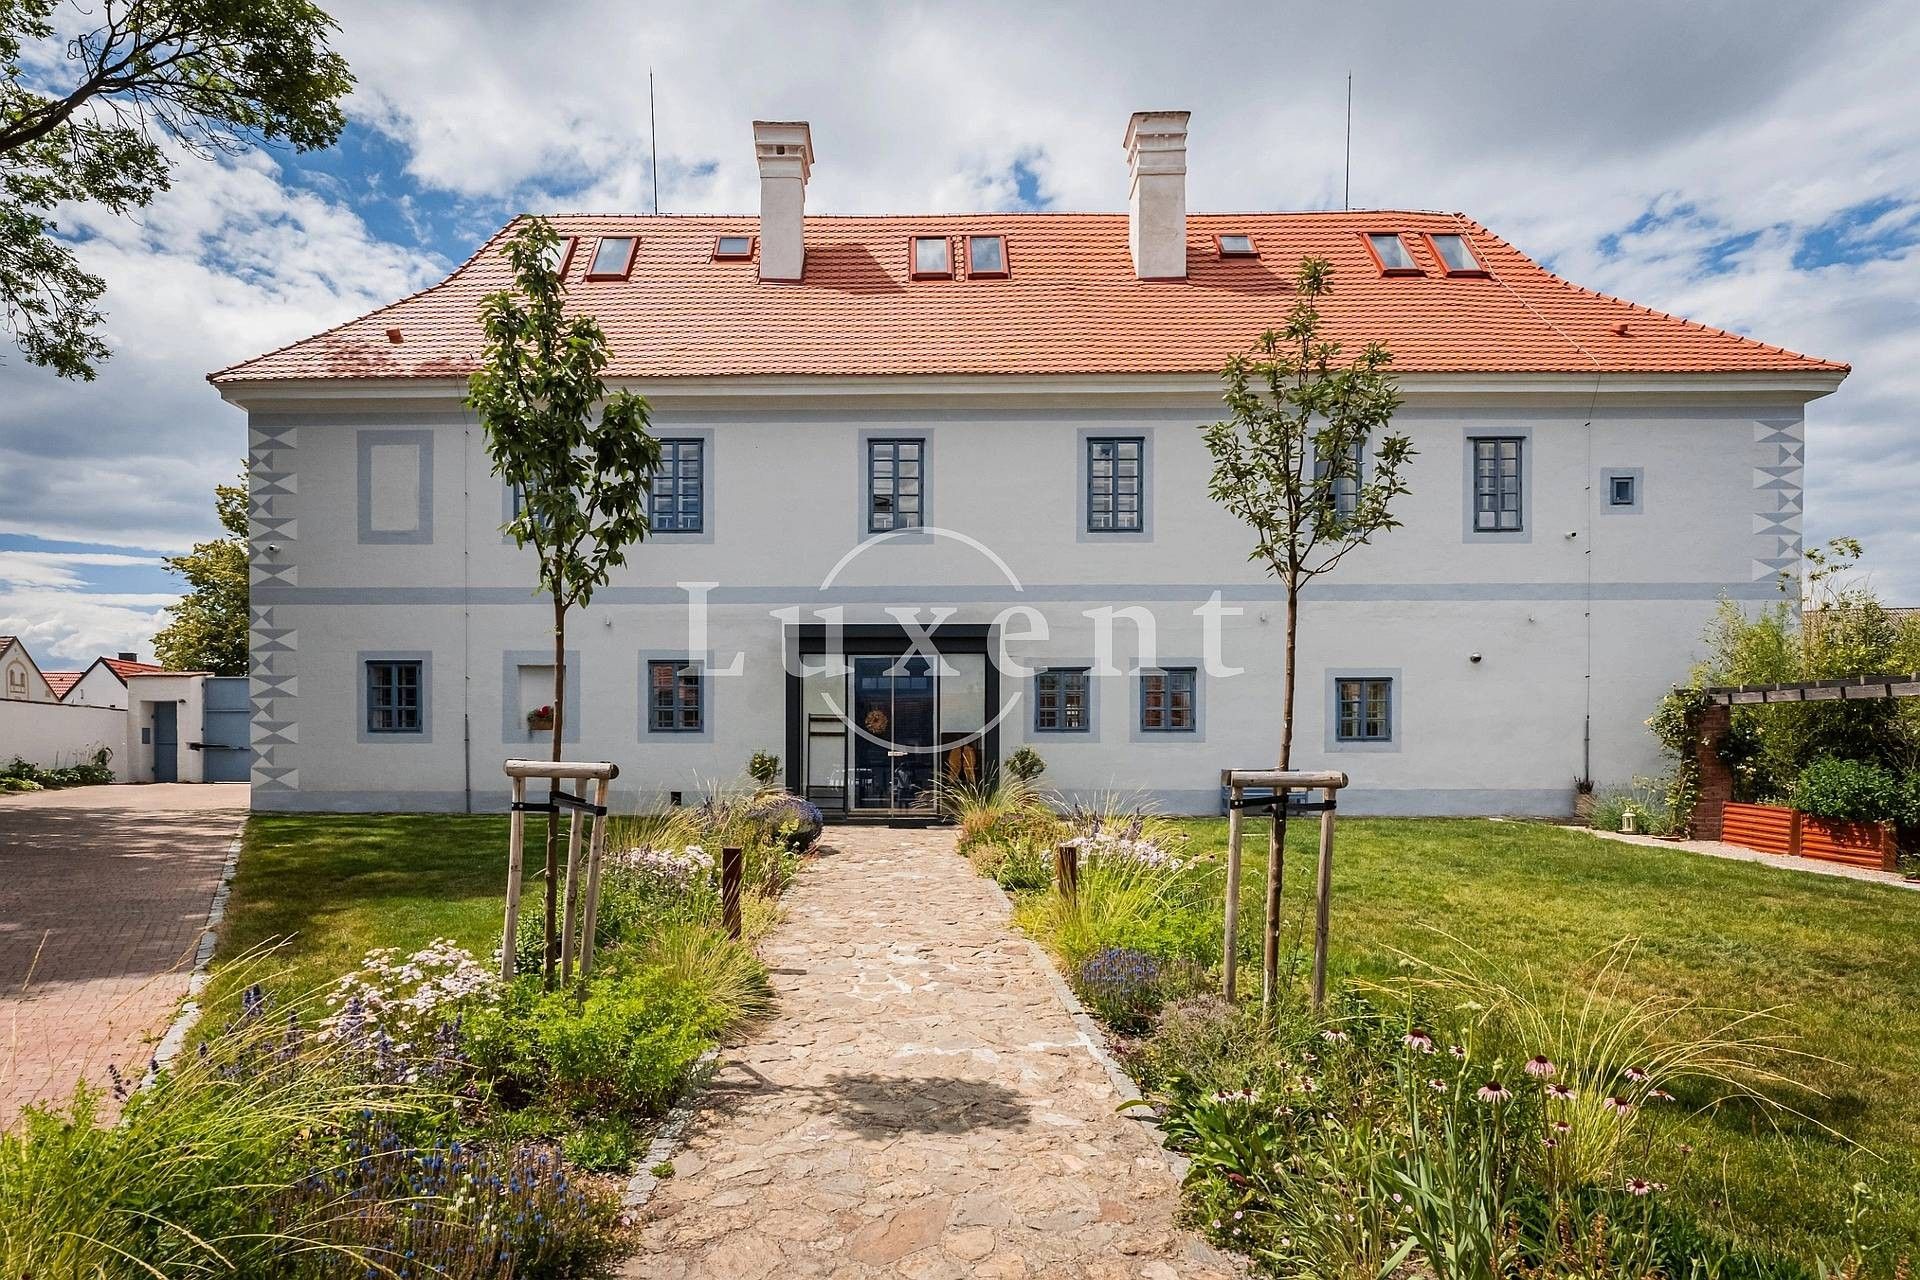 Photos Château près de České Budějovice - excellente efficacité énergétique